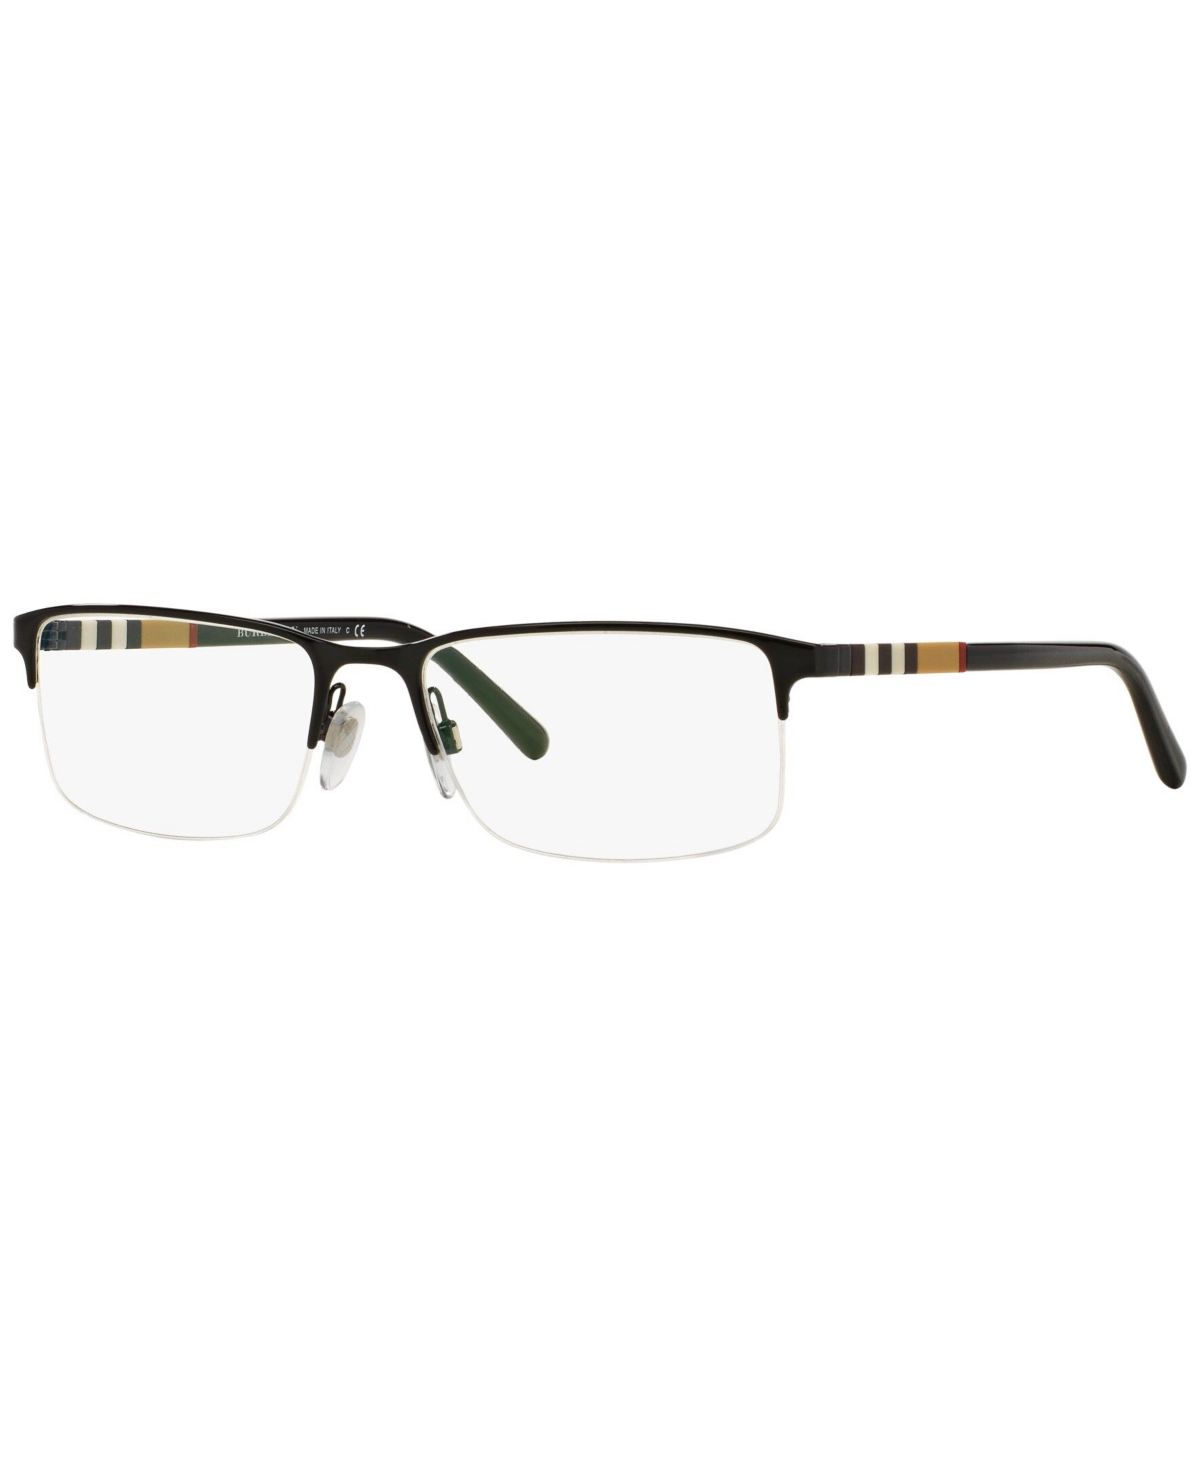 BE1282 Men's Rectangle Eyeglasses - Black